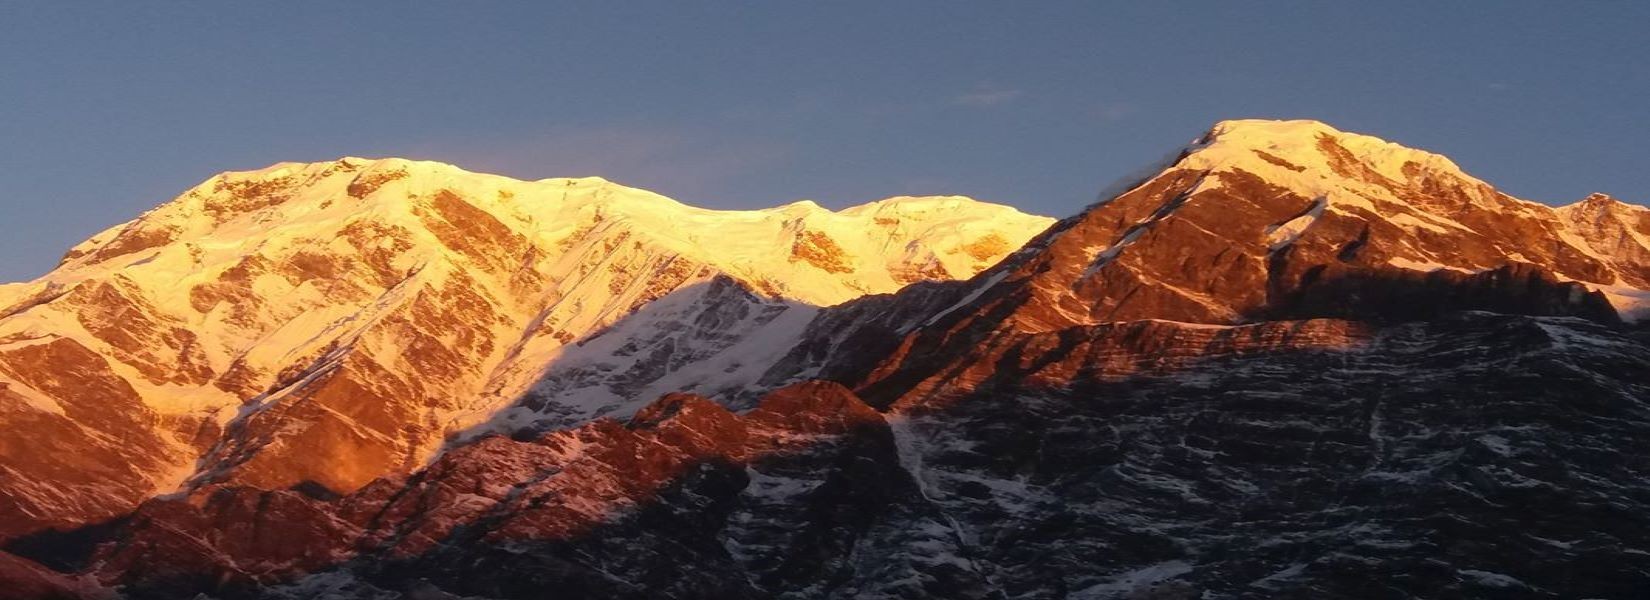 Annapurna Sunrise Trekking